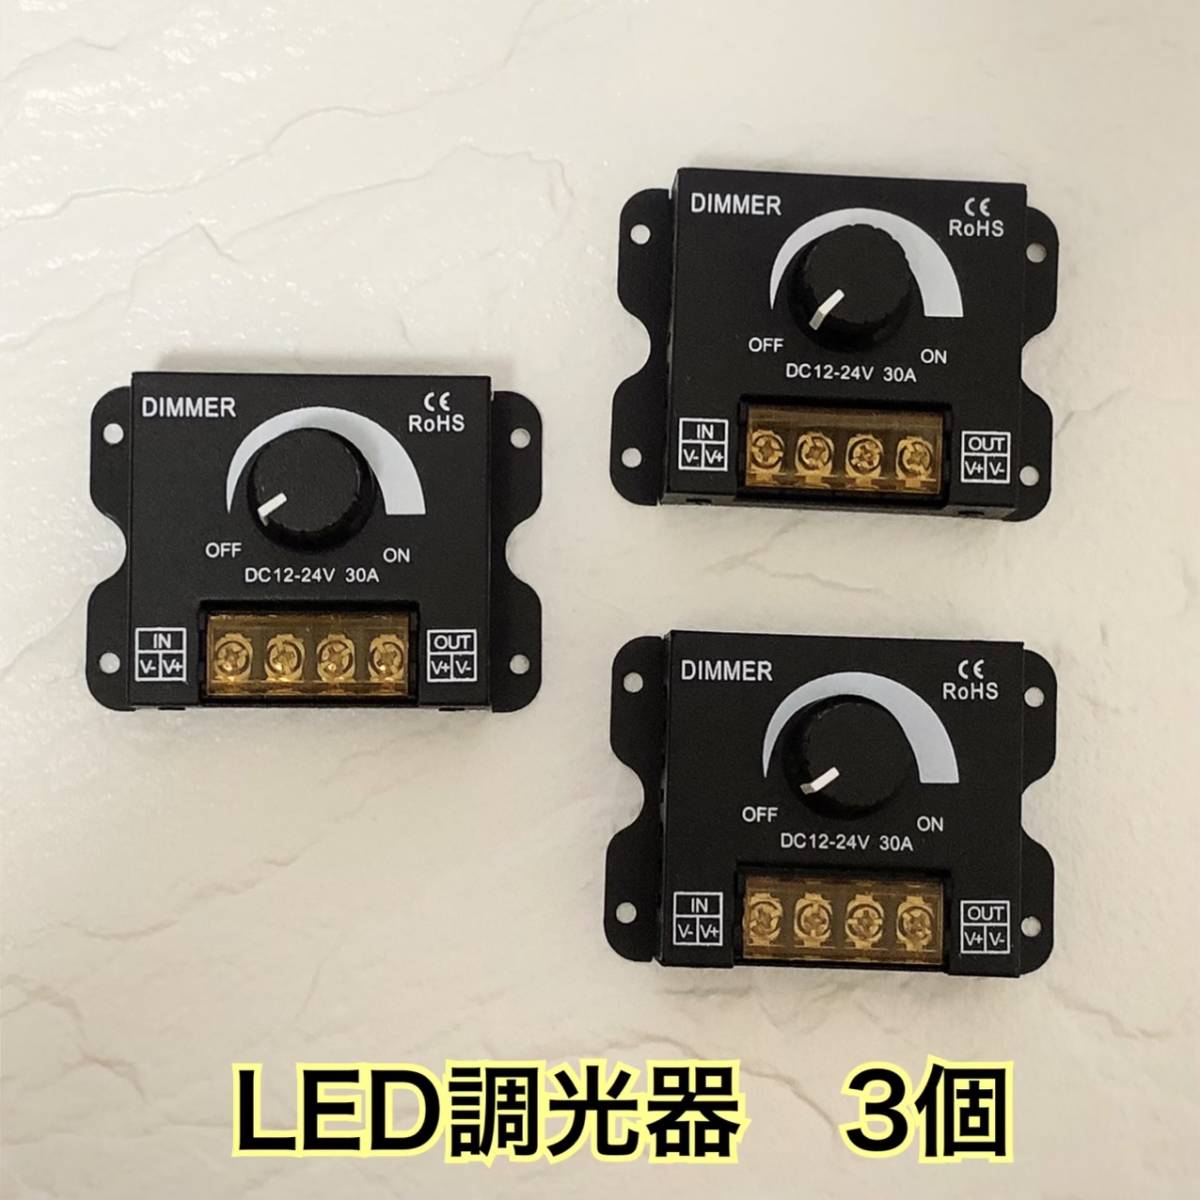 LED調光器 30A ディマースイッチ 3個 12V-24V コントローラー 減光調整 無段階 調光ユニット トラック デコトラ テープライト ワークライト_画像1